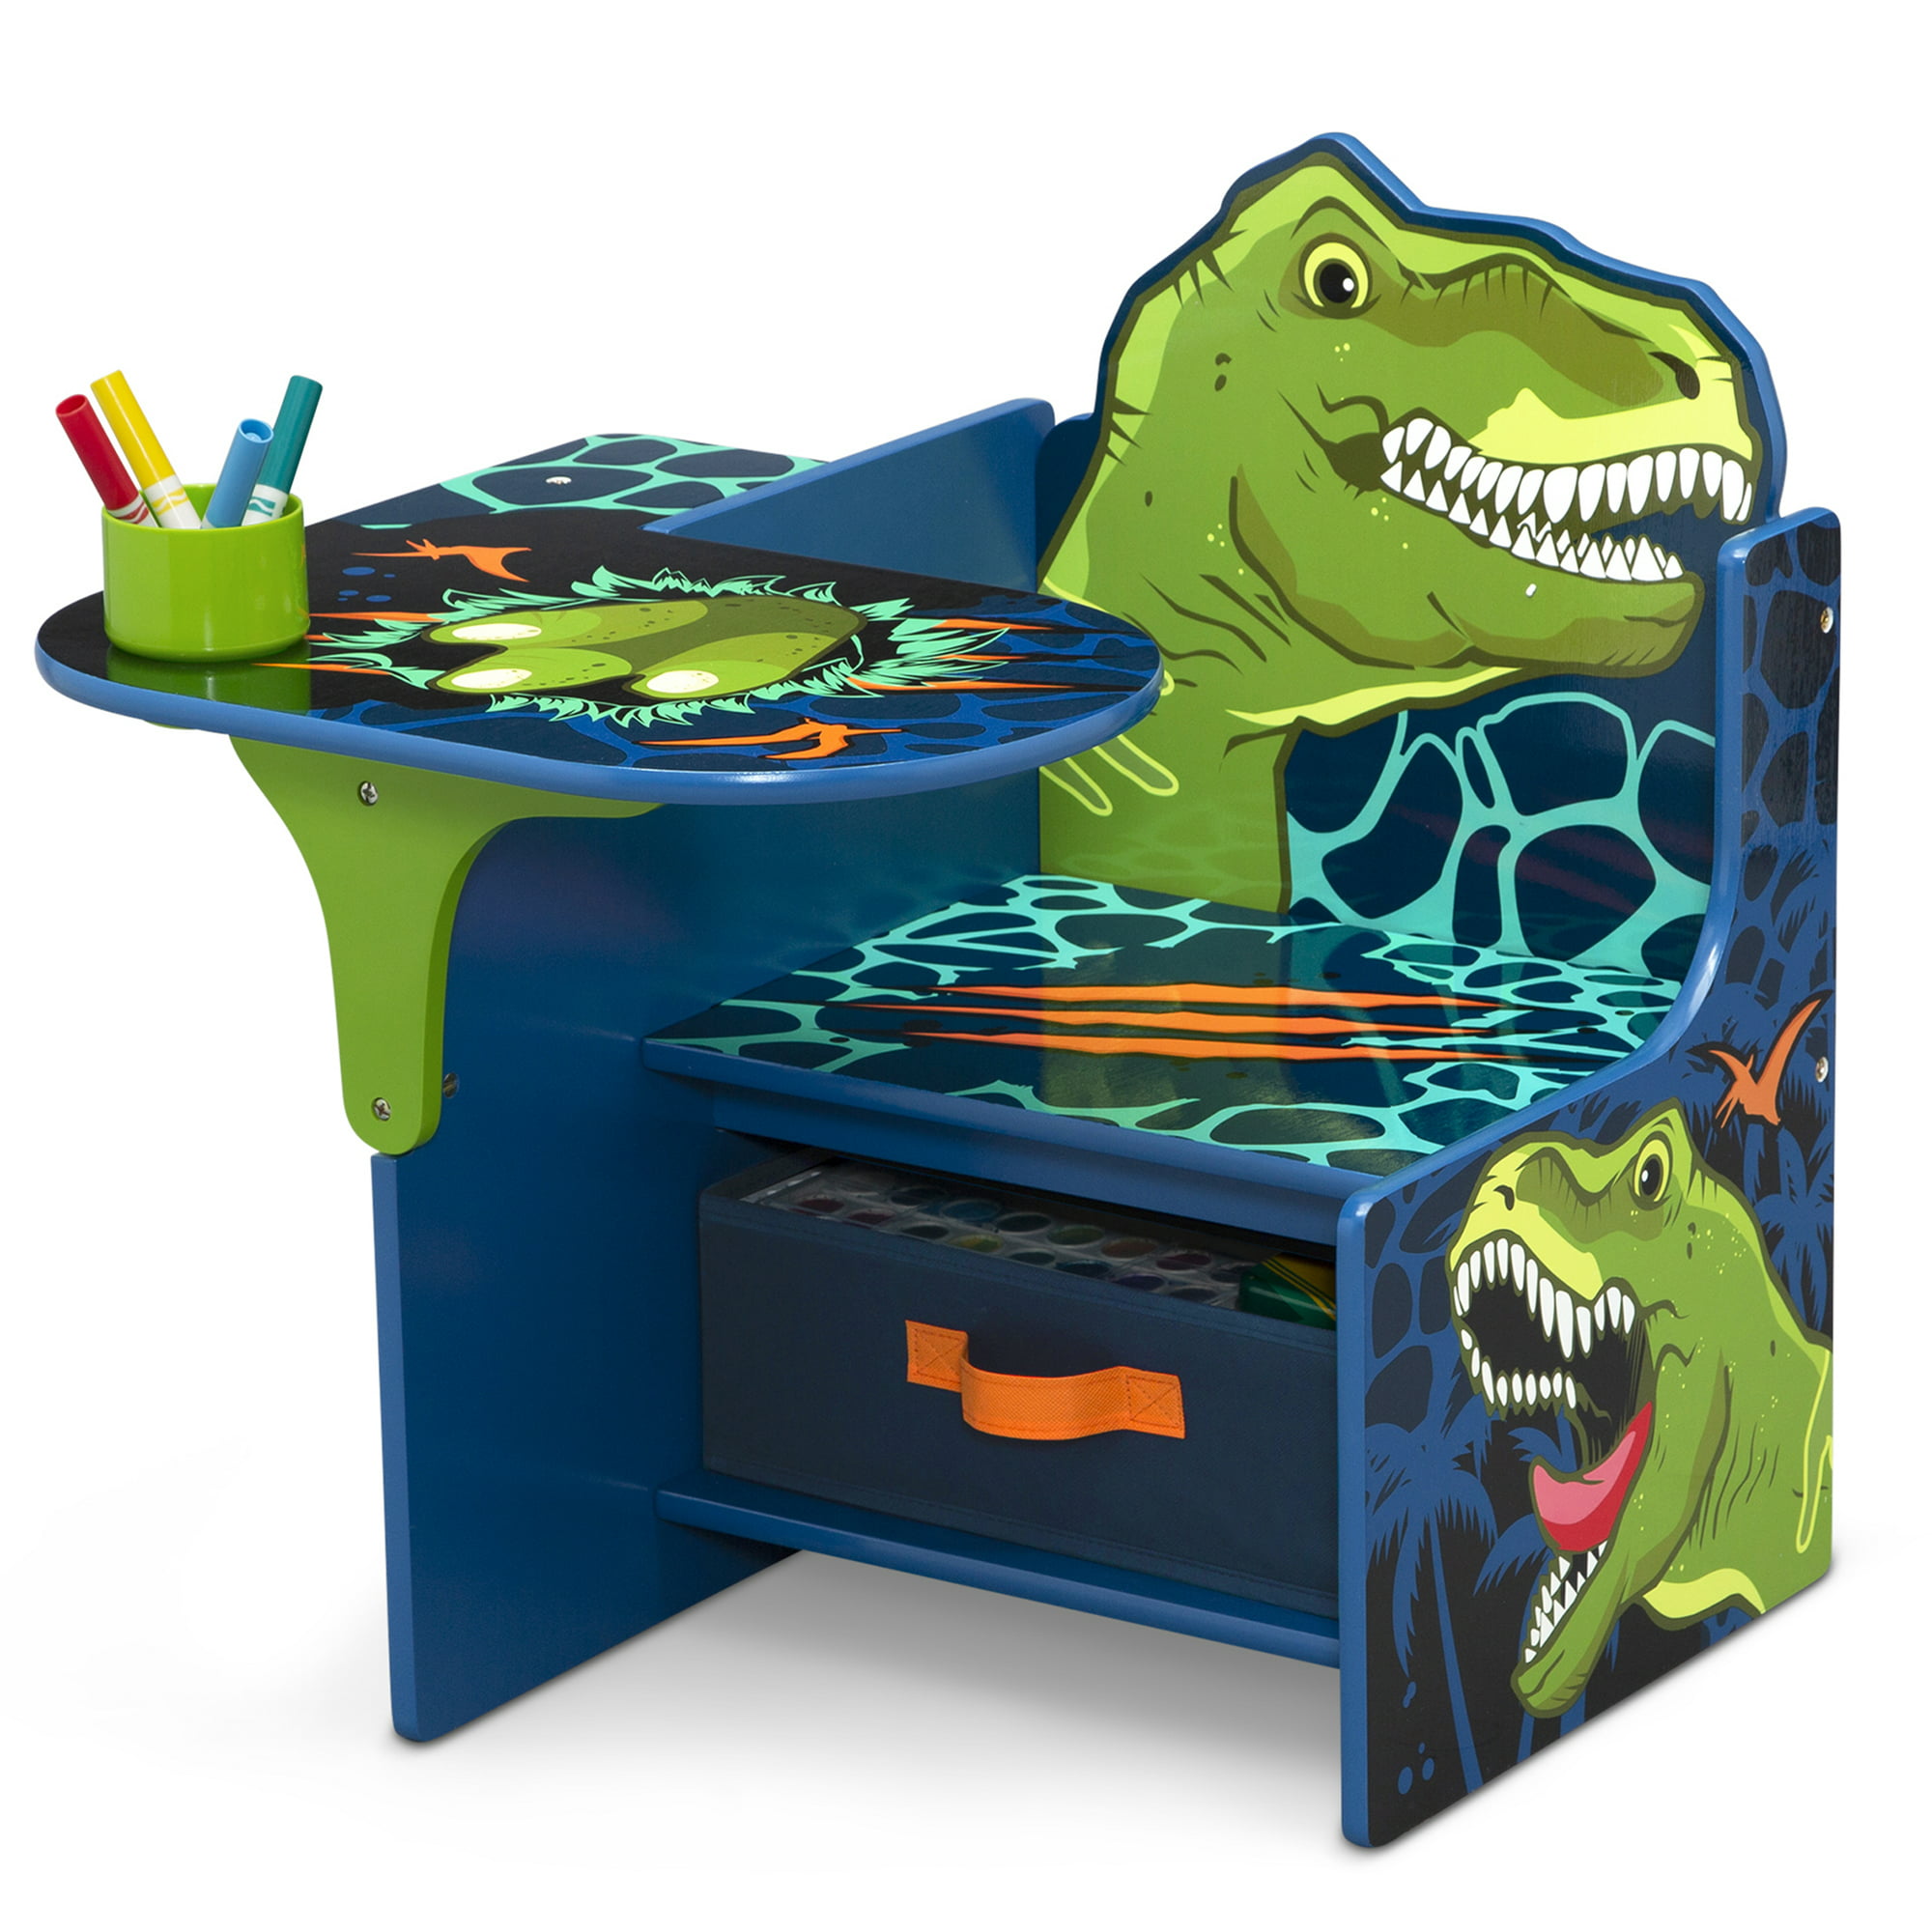 Delta Children Dinosaur Chair Desk with Storage Bin – Greenguard Gold Certified